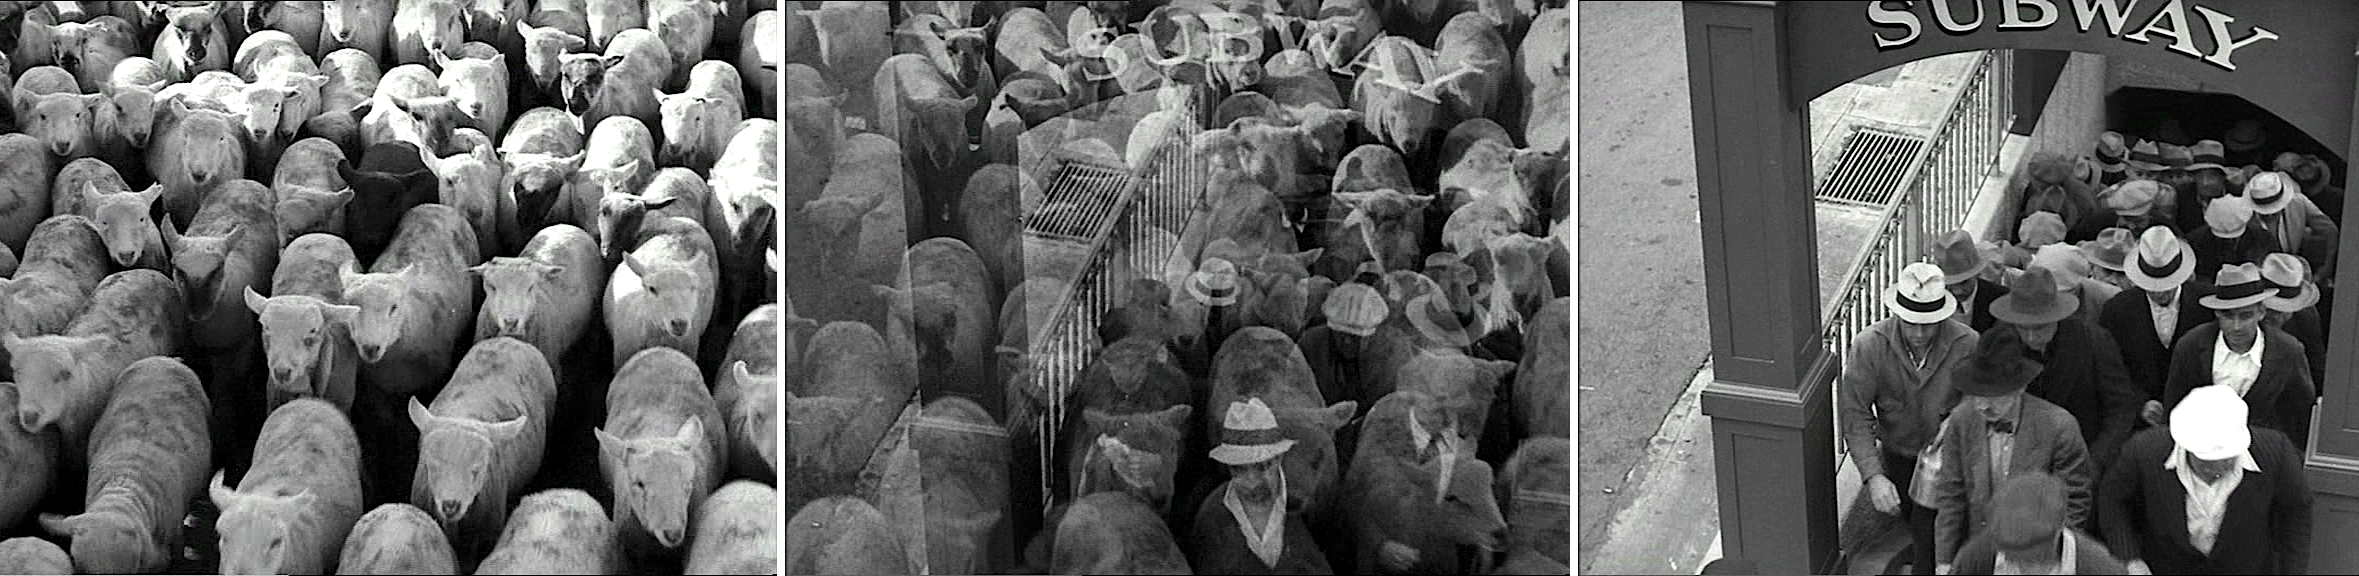 Les Temps modernes (Modern Times, 1936) de Charles Chaplin, édité en vidéo par MK2/Potemkine.